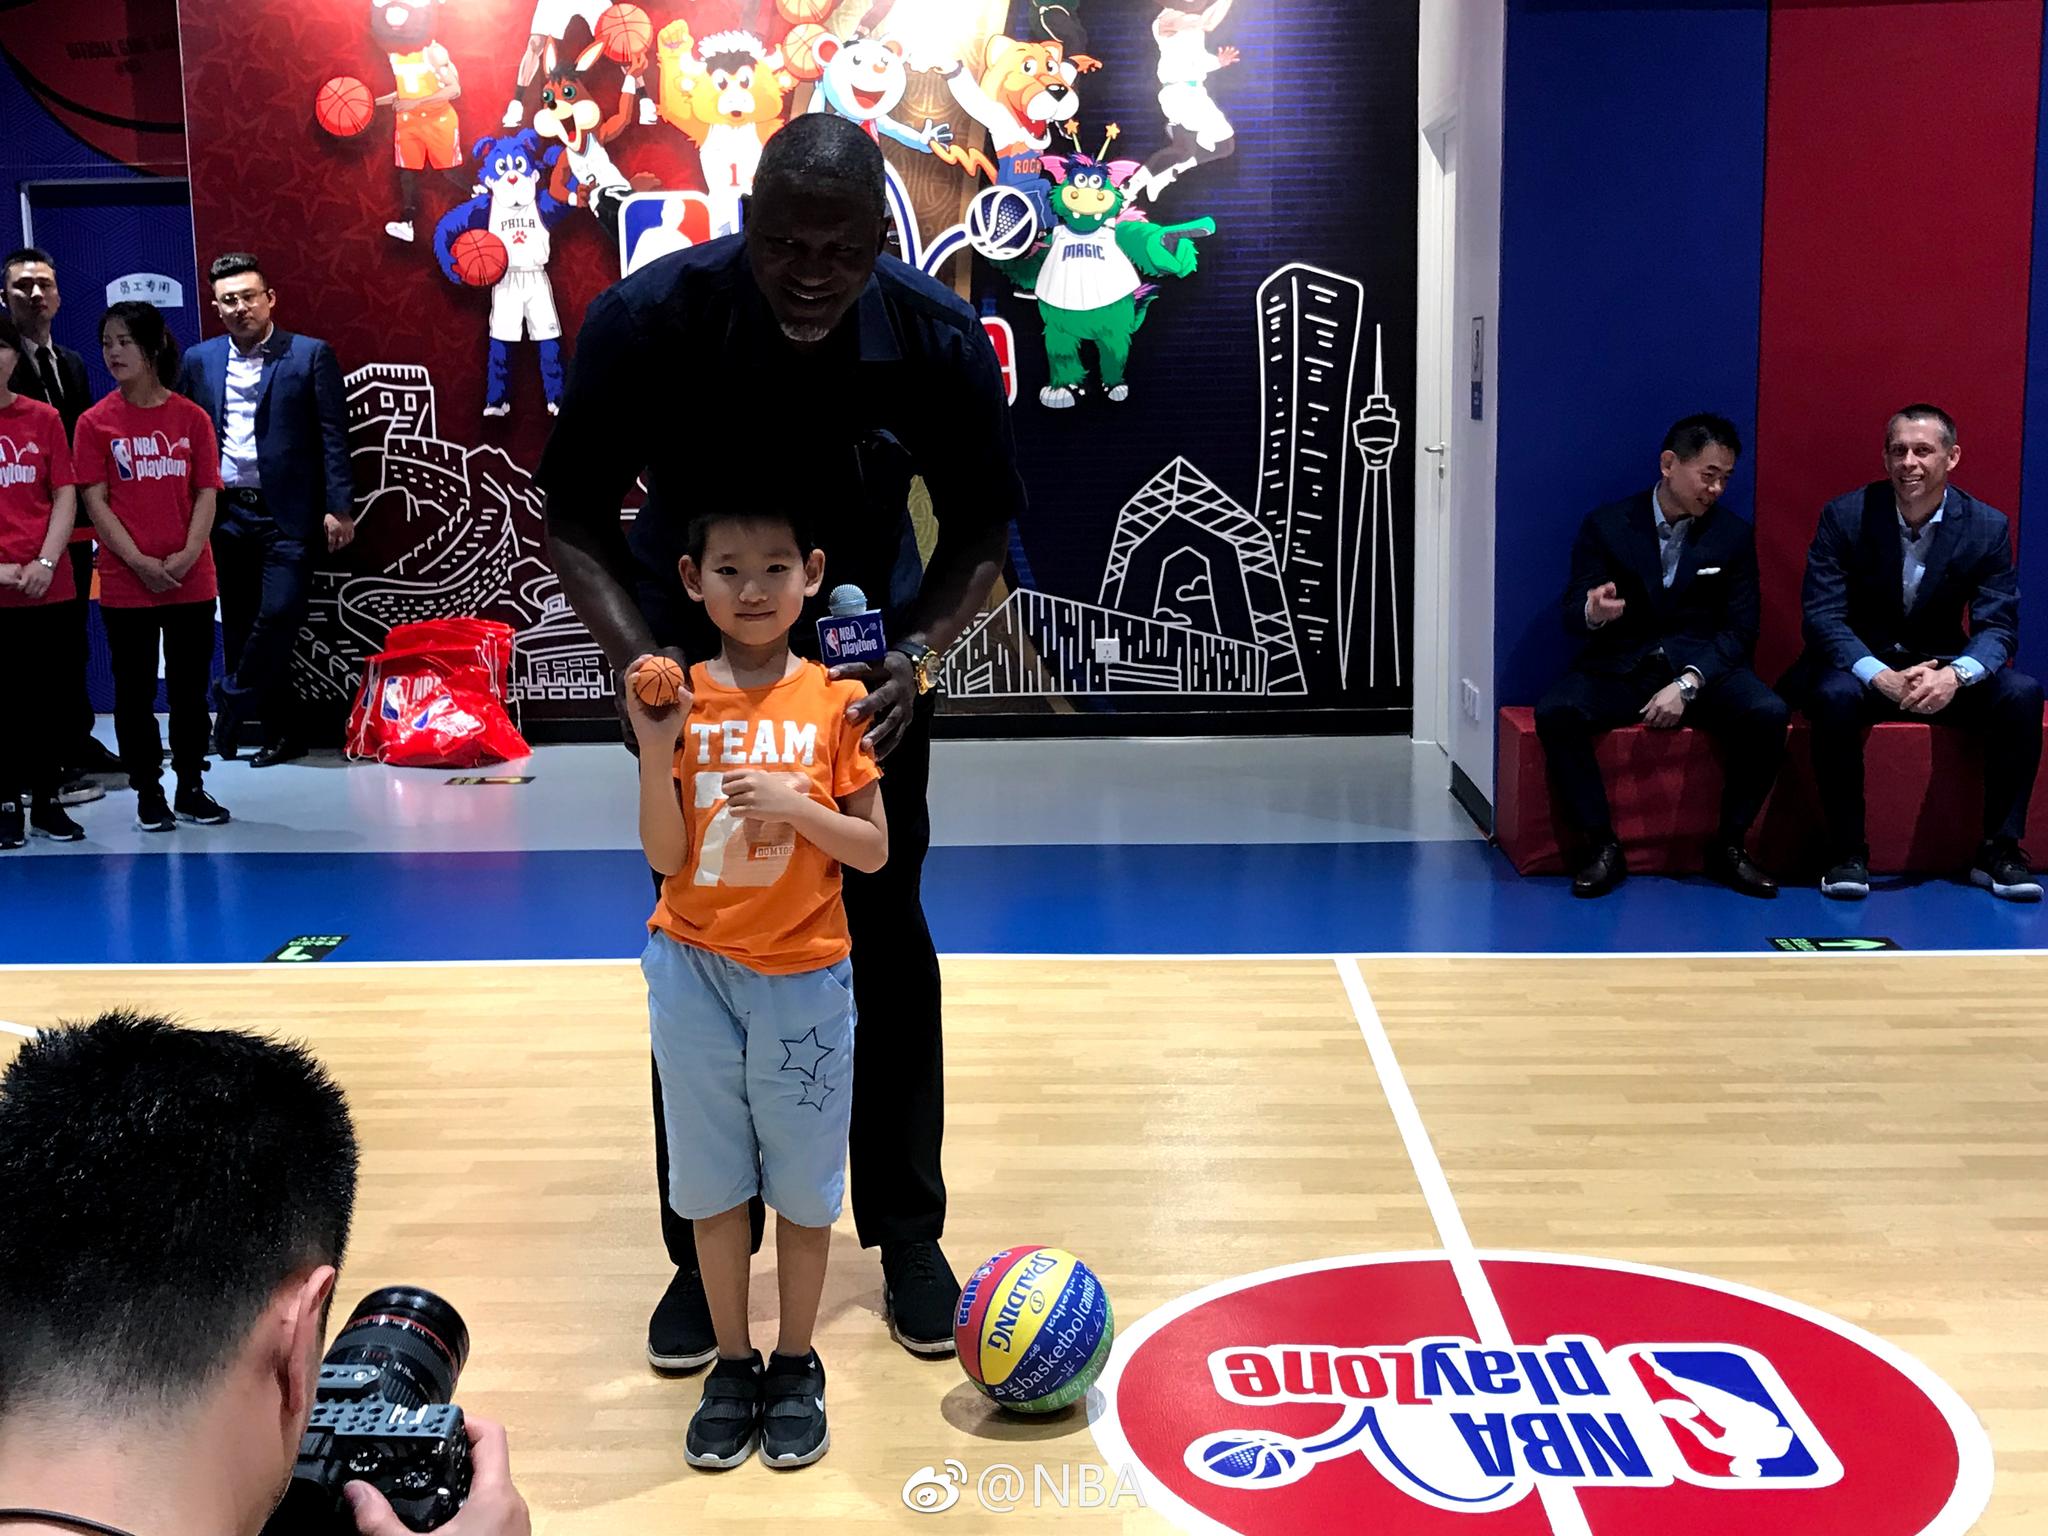 全国第二家NBAPlayZone在北京朝阳区常营华